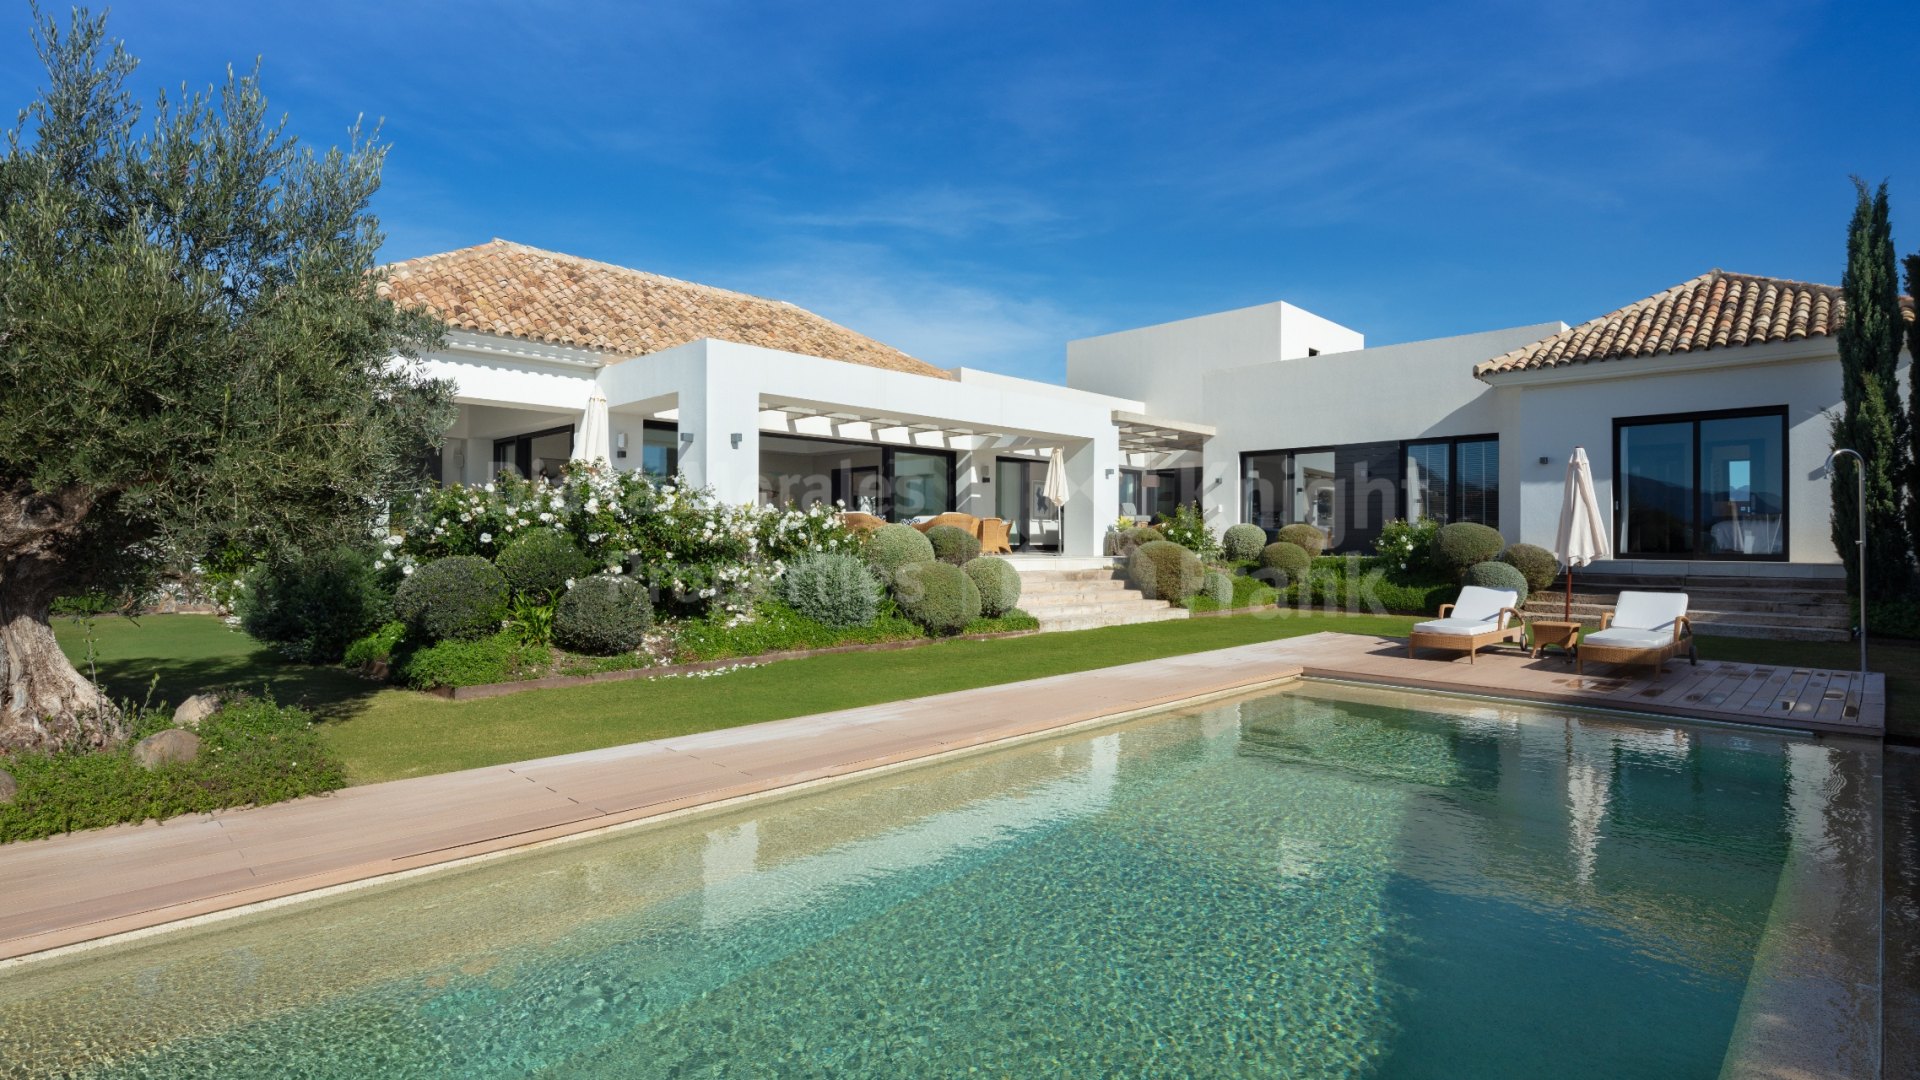 Haza del Conde, Exquisite Villa im mediterranen Stil mit traumhaftem Blick auf das Golftal in Marbella